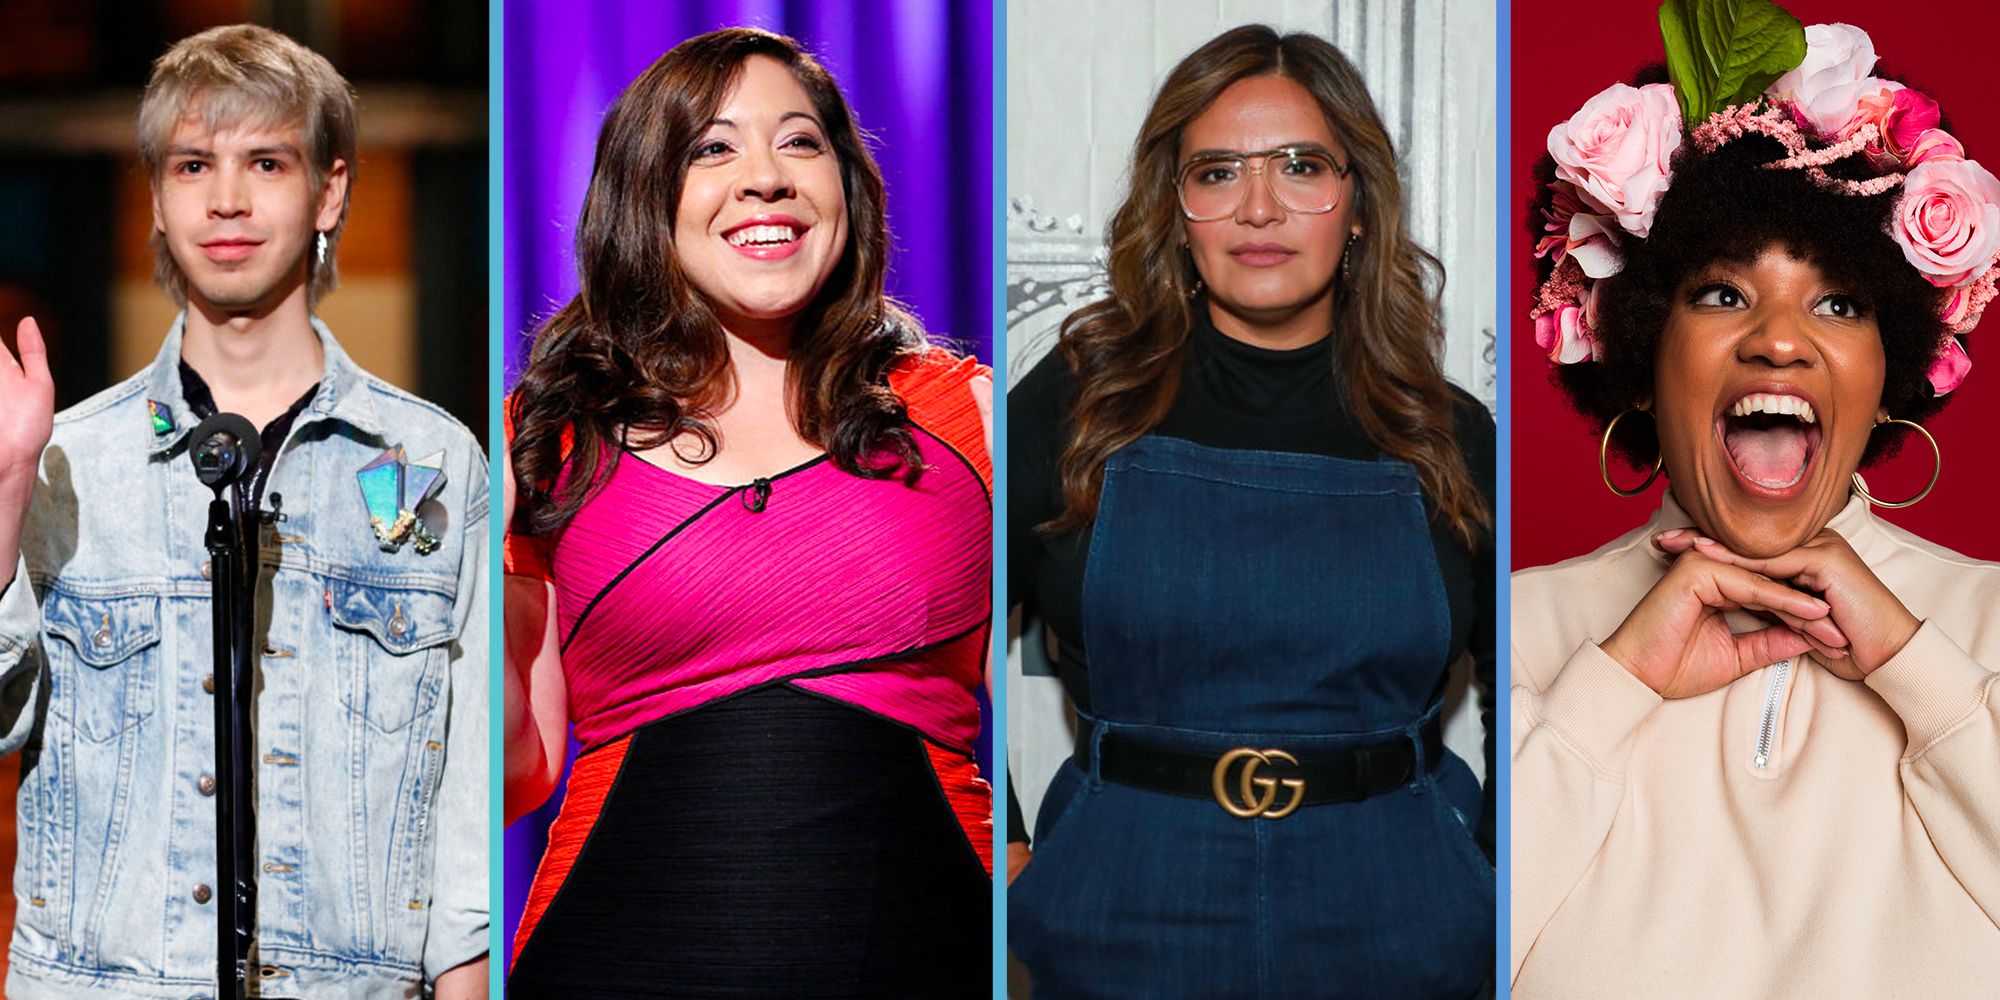 27 Best Hispanic Comedians - Funny Hispanic Comedians List